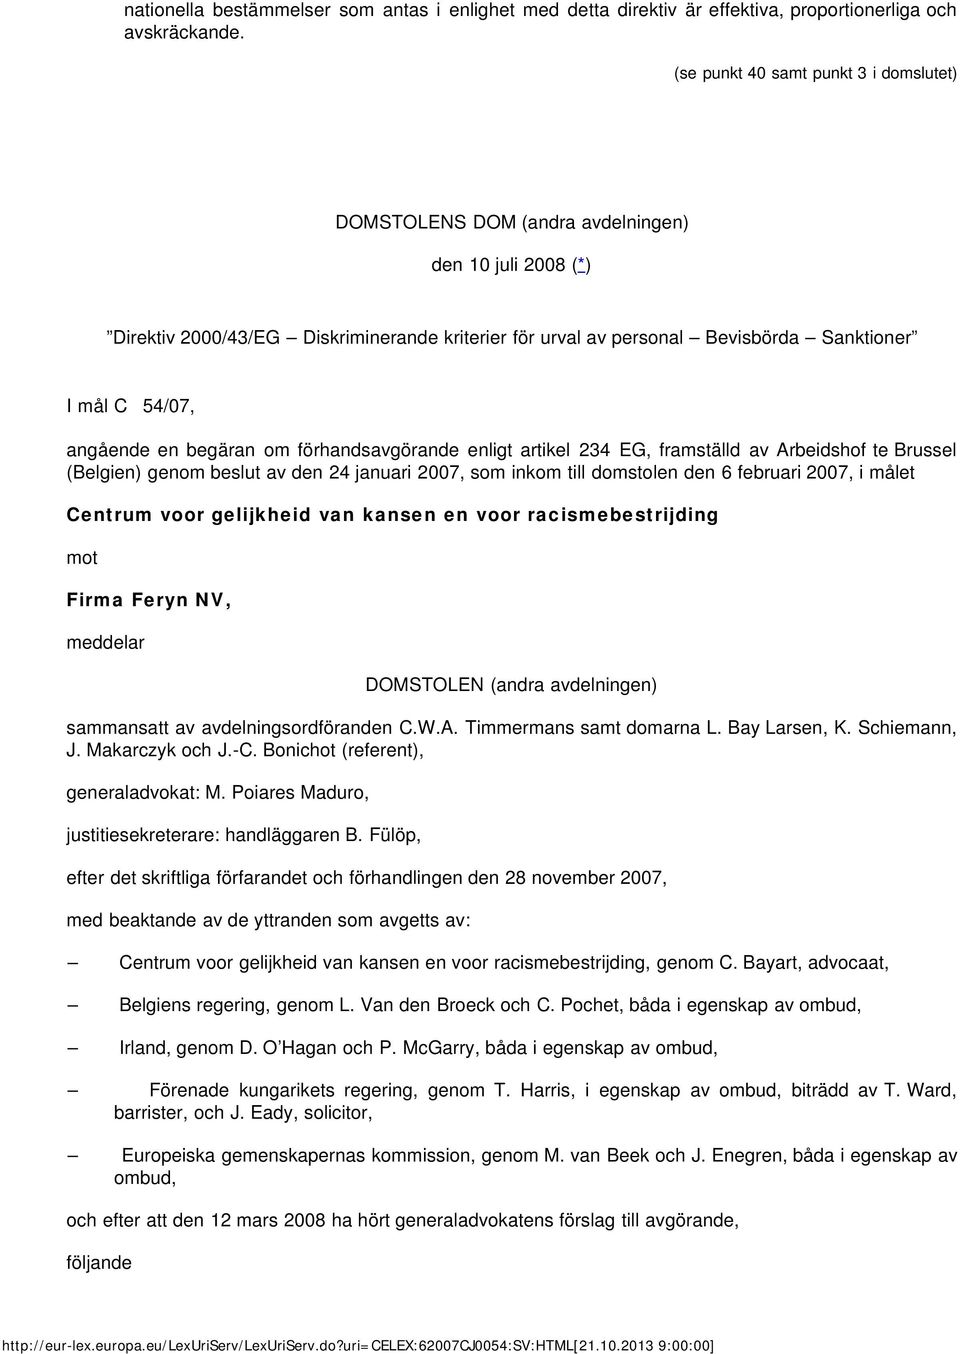 angående en begäran om förhandsavgörande enligt artikel 234 EG, framställd av Arbeidshof te Brussel (Belgien) genom beslut av den 24 januari 2007, som inkom till domstolen den 6 februari 2007, i